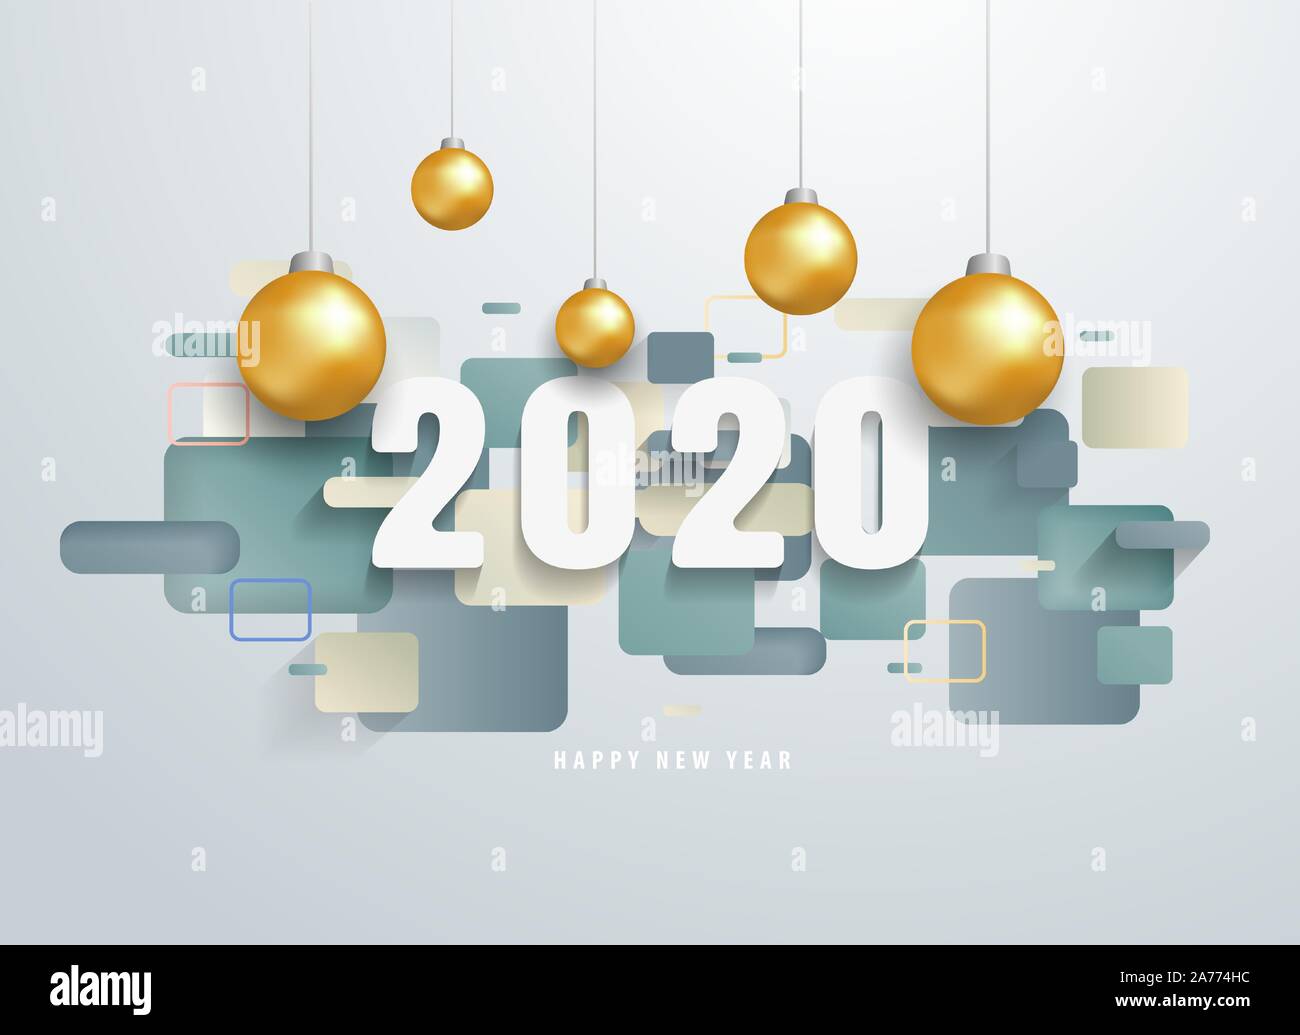 Heureuse nouvelle année 2020 avec des formes géométriques colorées bannière. Salutations et invitations, nouvel an sur le thème de Noël félicitations. Illustration de Vecteur